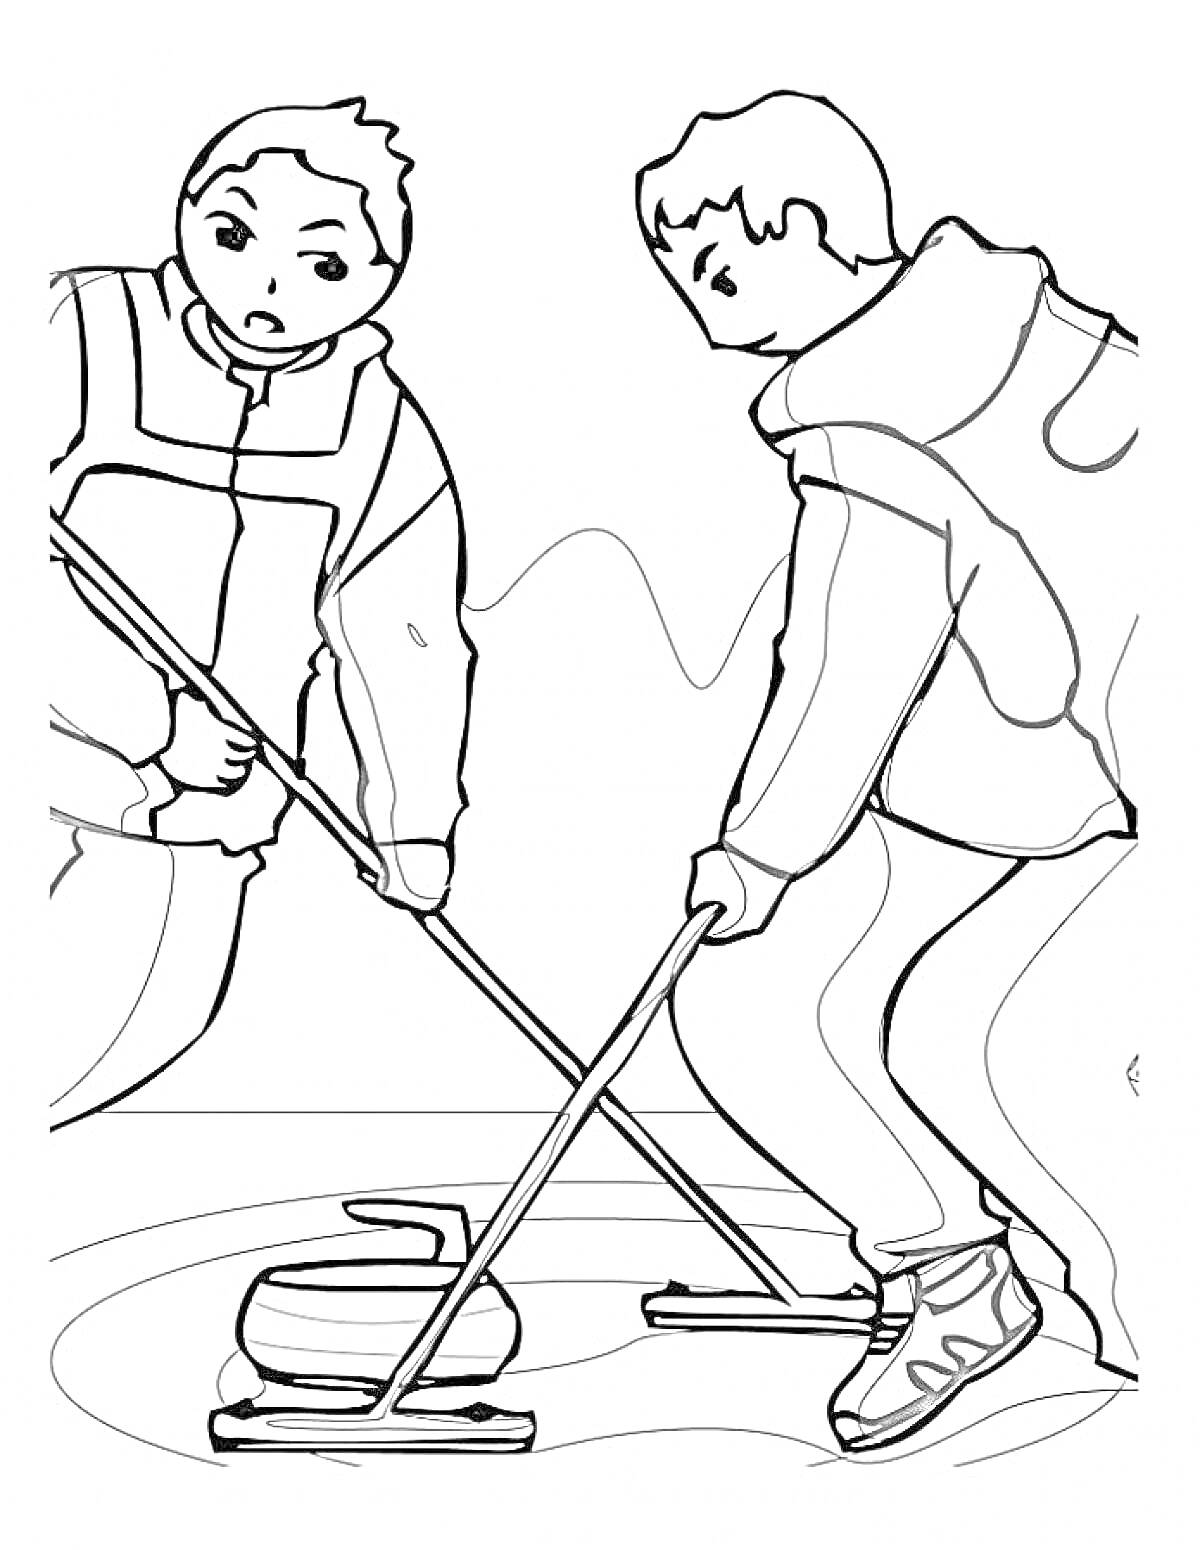 Два человека играют в кёрлинг, держа щётки и направляя камень по льду.